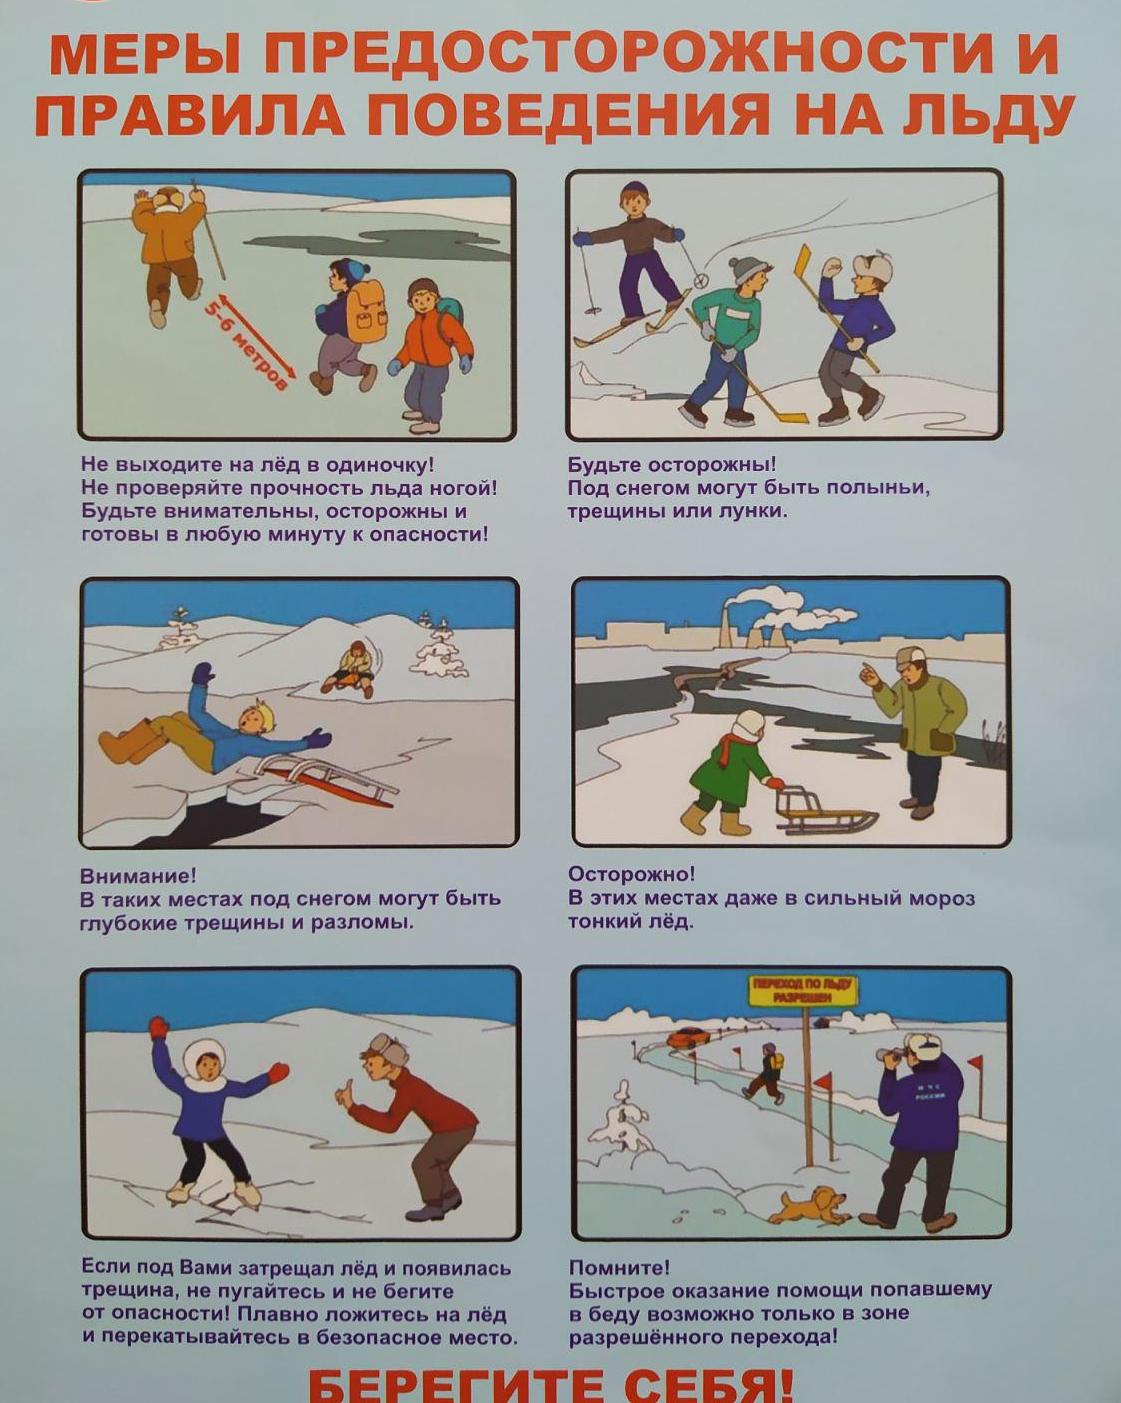 Меры предосторожности на льду картинки